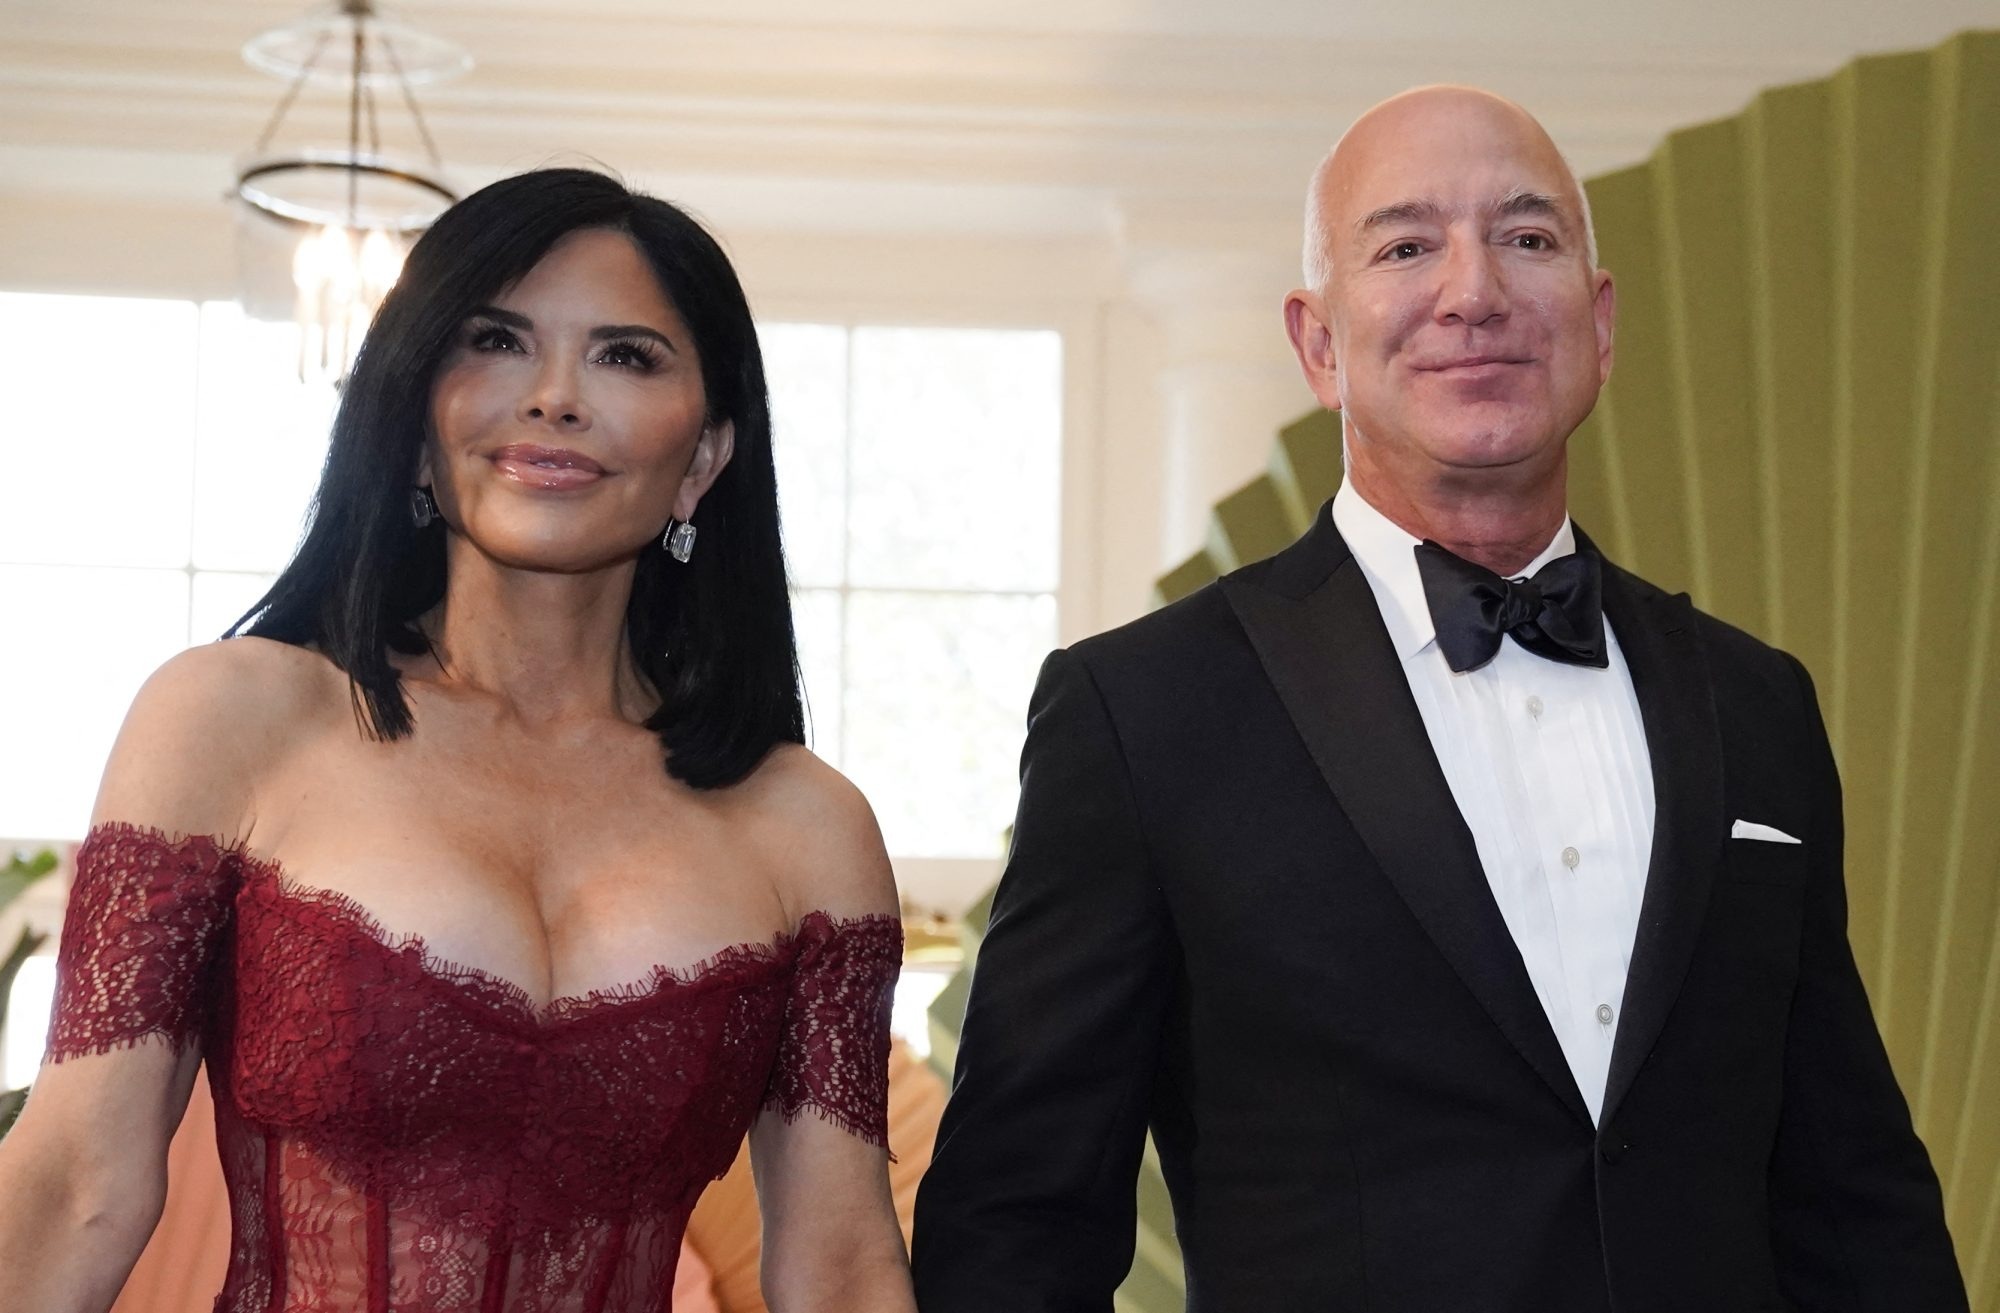 View - Bạn gái tỷ phú Amazon bị chỉ trích vì cách ăn vận khi dự sự kiện Nhà Trắng | Báo Dân trí